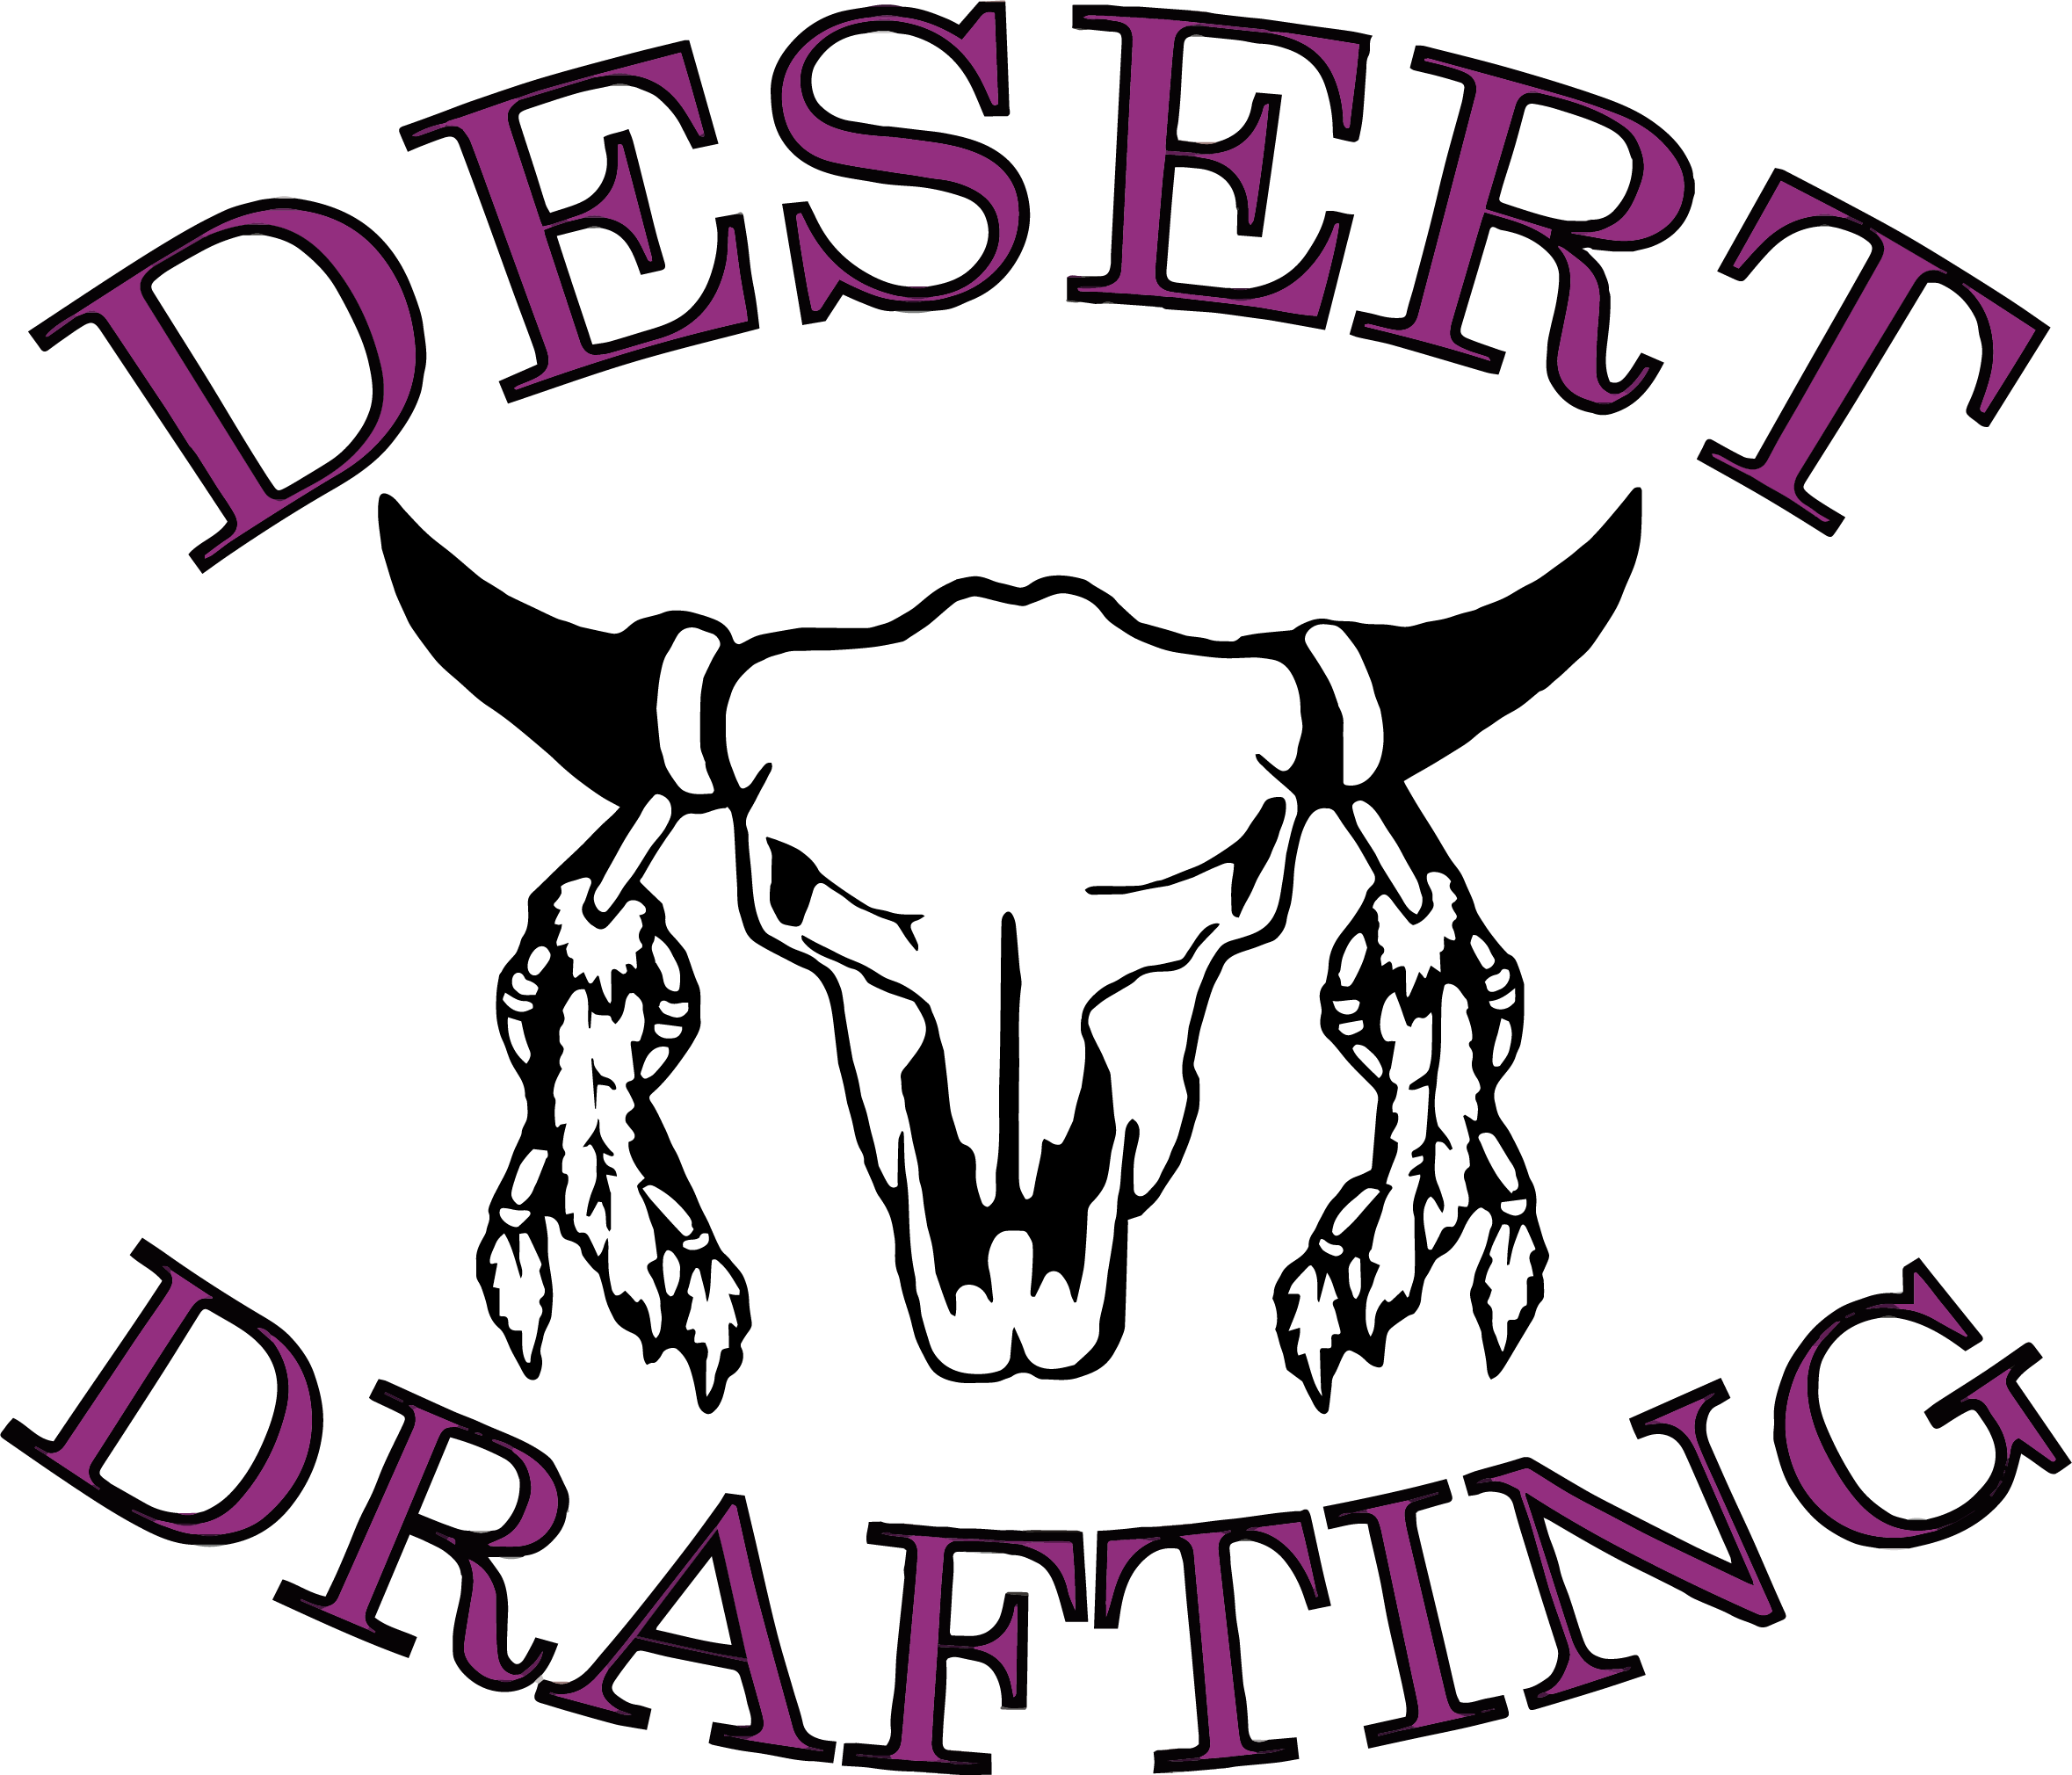 DESERT DRAFTING